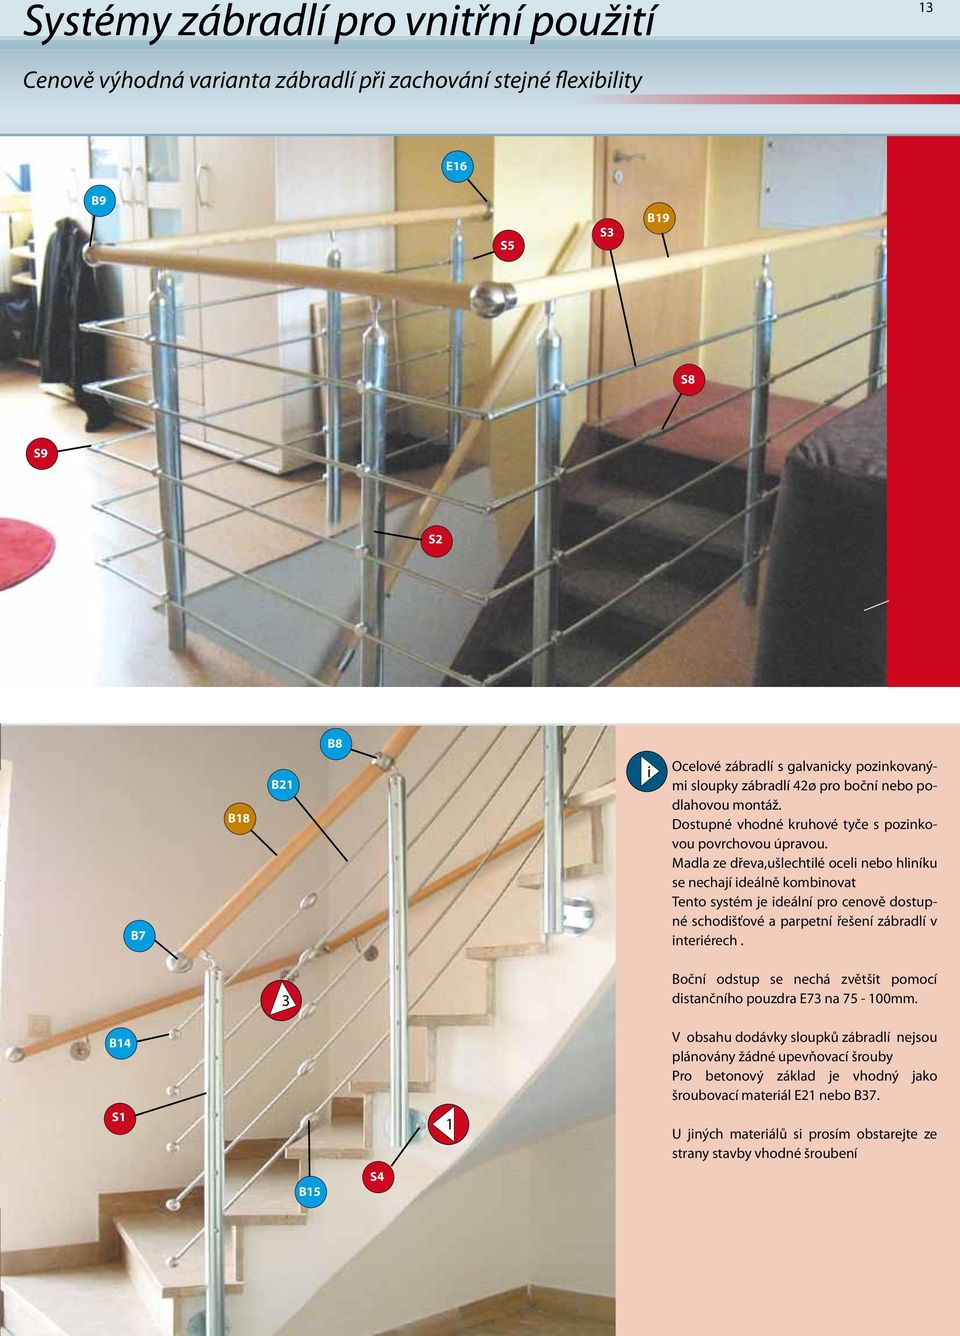 Madla ze dřeva,ušlechtilé oceli nebo hliníku se nechají ideálně kombinovat Tento systém je ideální pro cenově dostupné schodišťové a parpetní řešení zábradlí v interiérech.